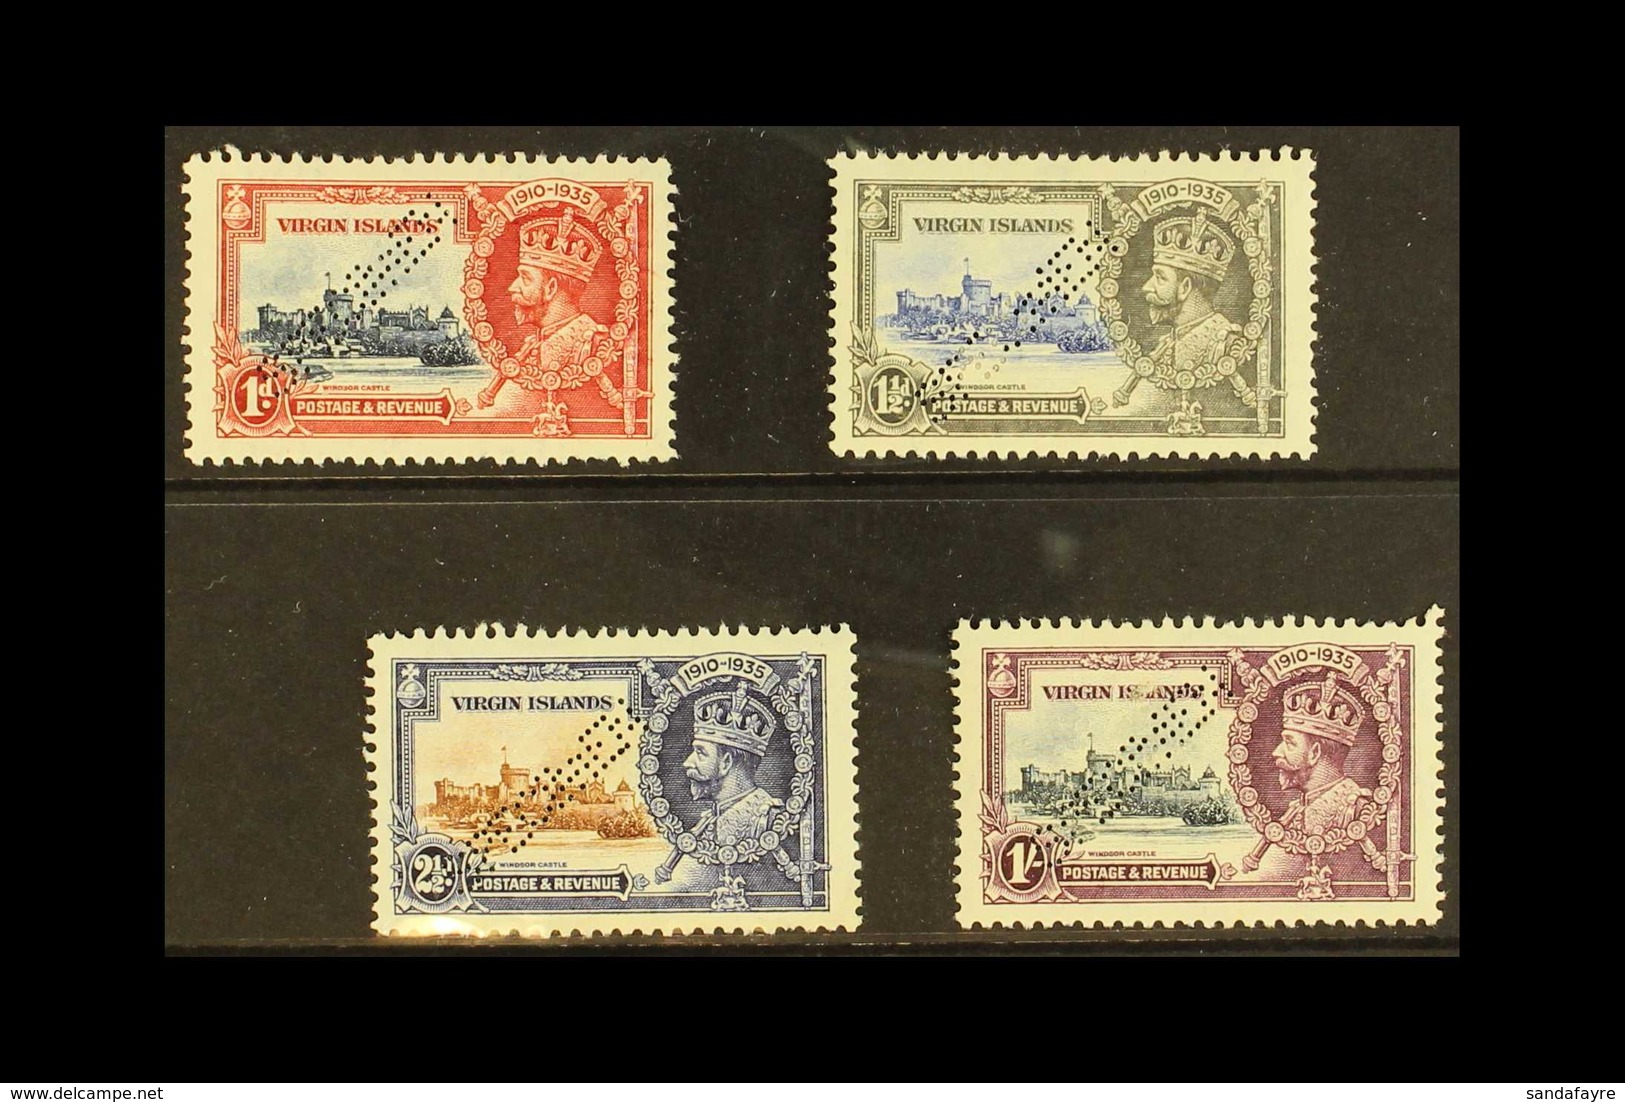 1935 Silver Jubilee Set Complete, Perforated "Specimen", SG 103s/6s, Fine Mint Part Og. (4 Stamps) For More Images, Plea - British Virgin Islands